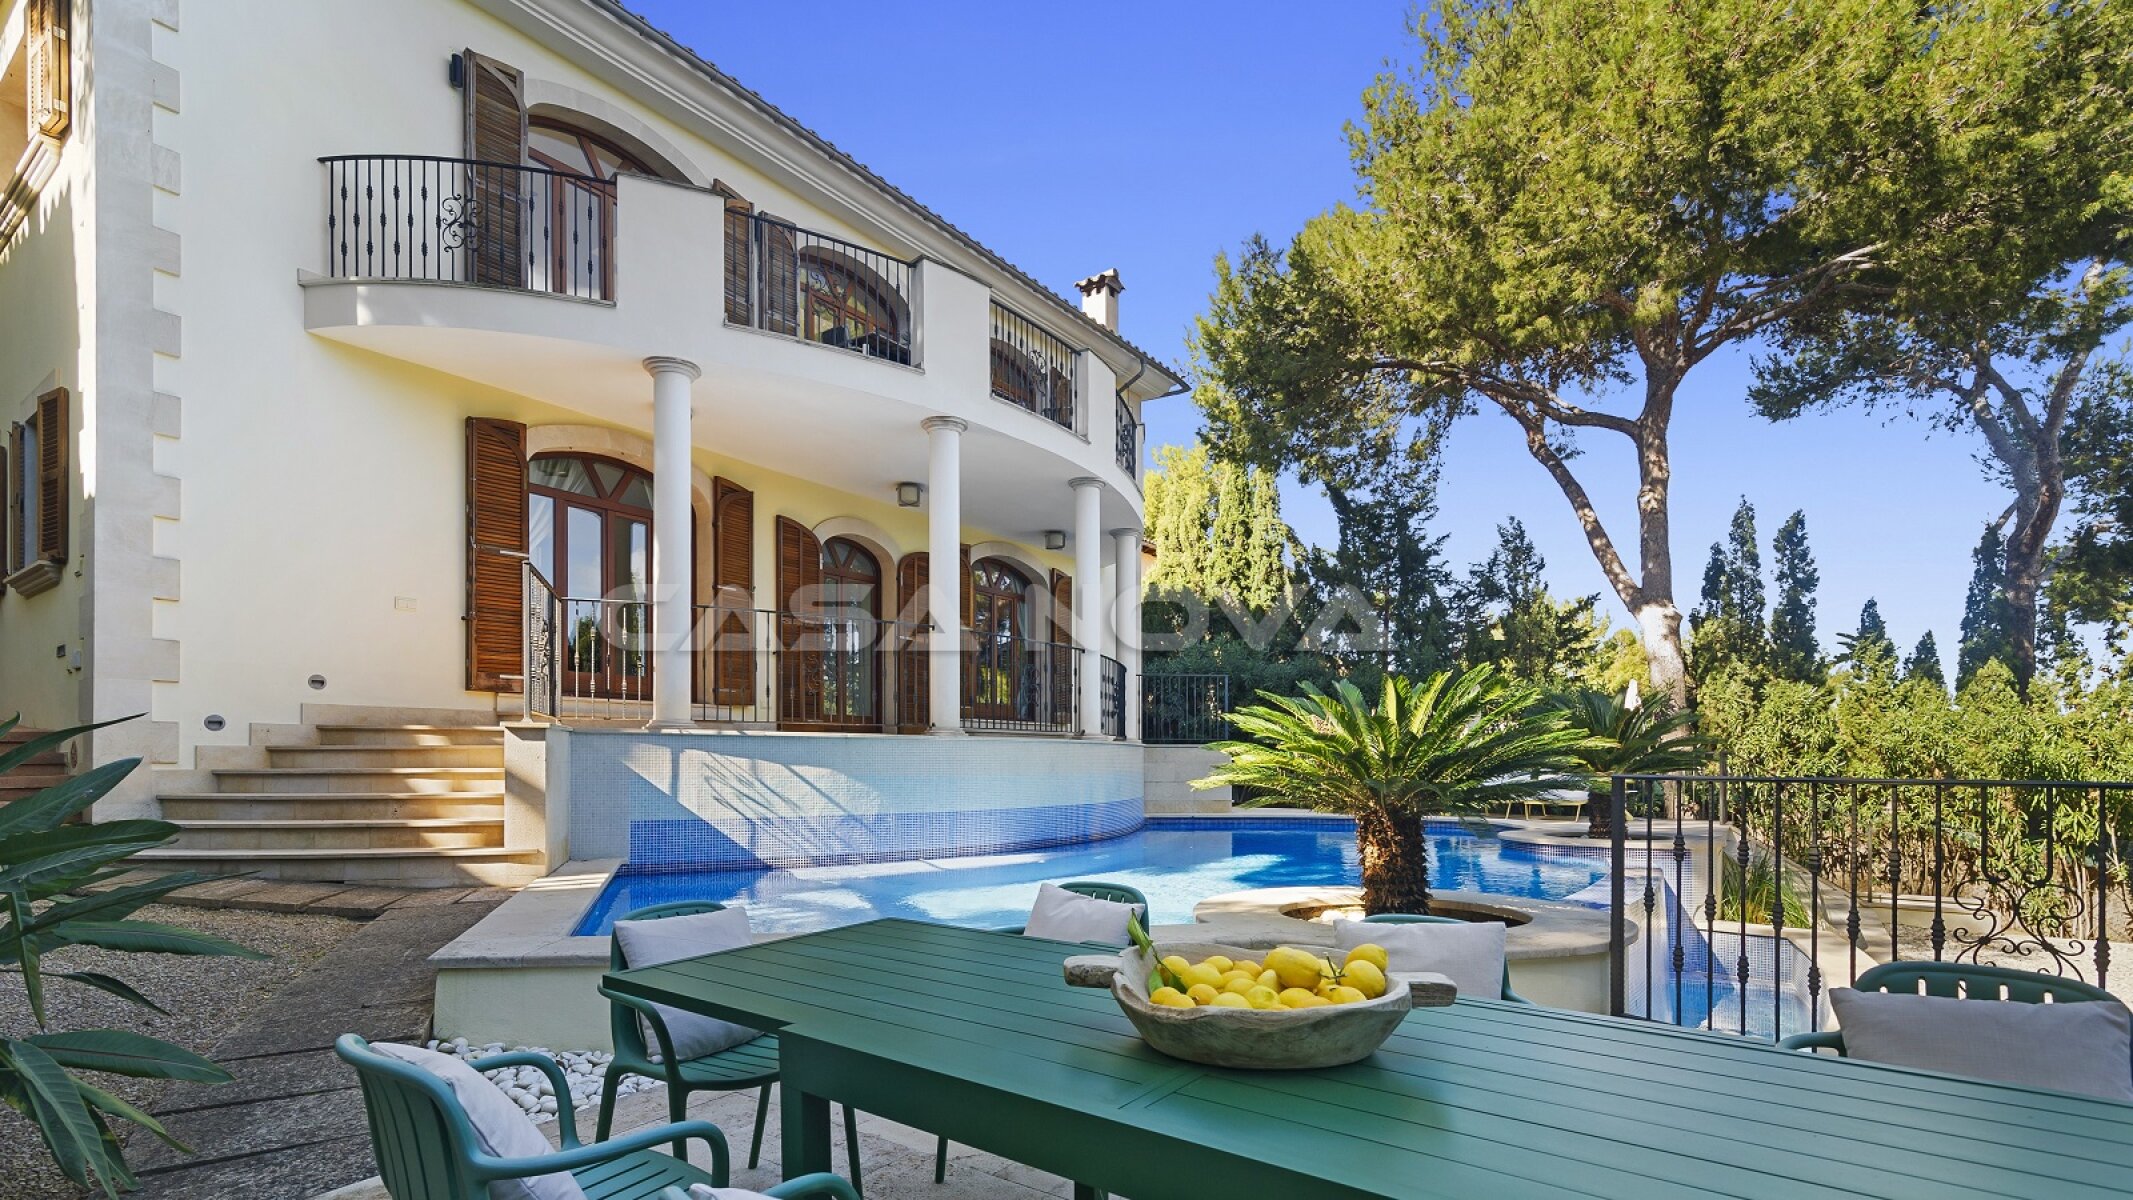 Mediterrane Luxusvilla in einer exklusiven Wohngegend